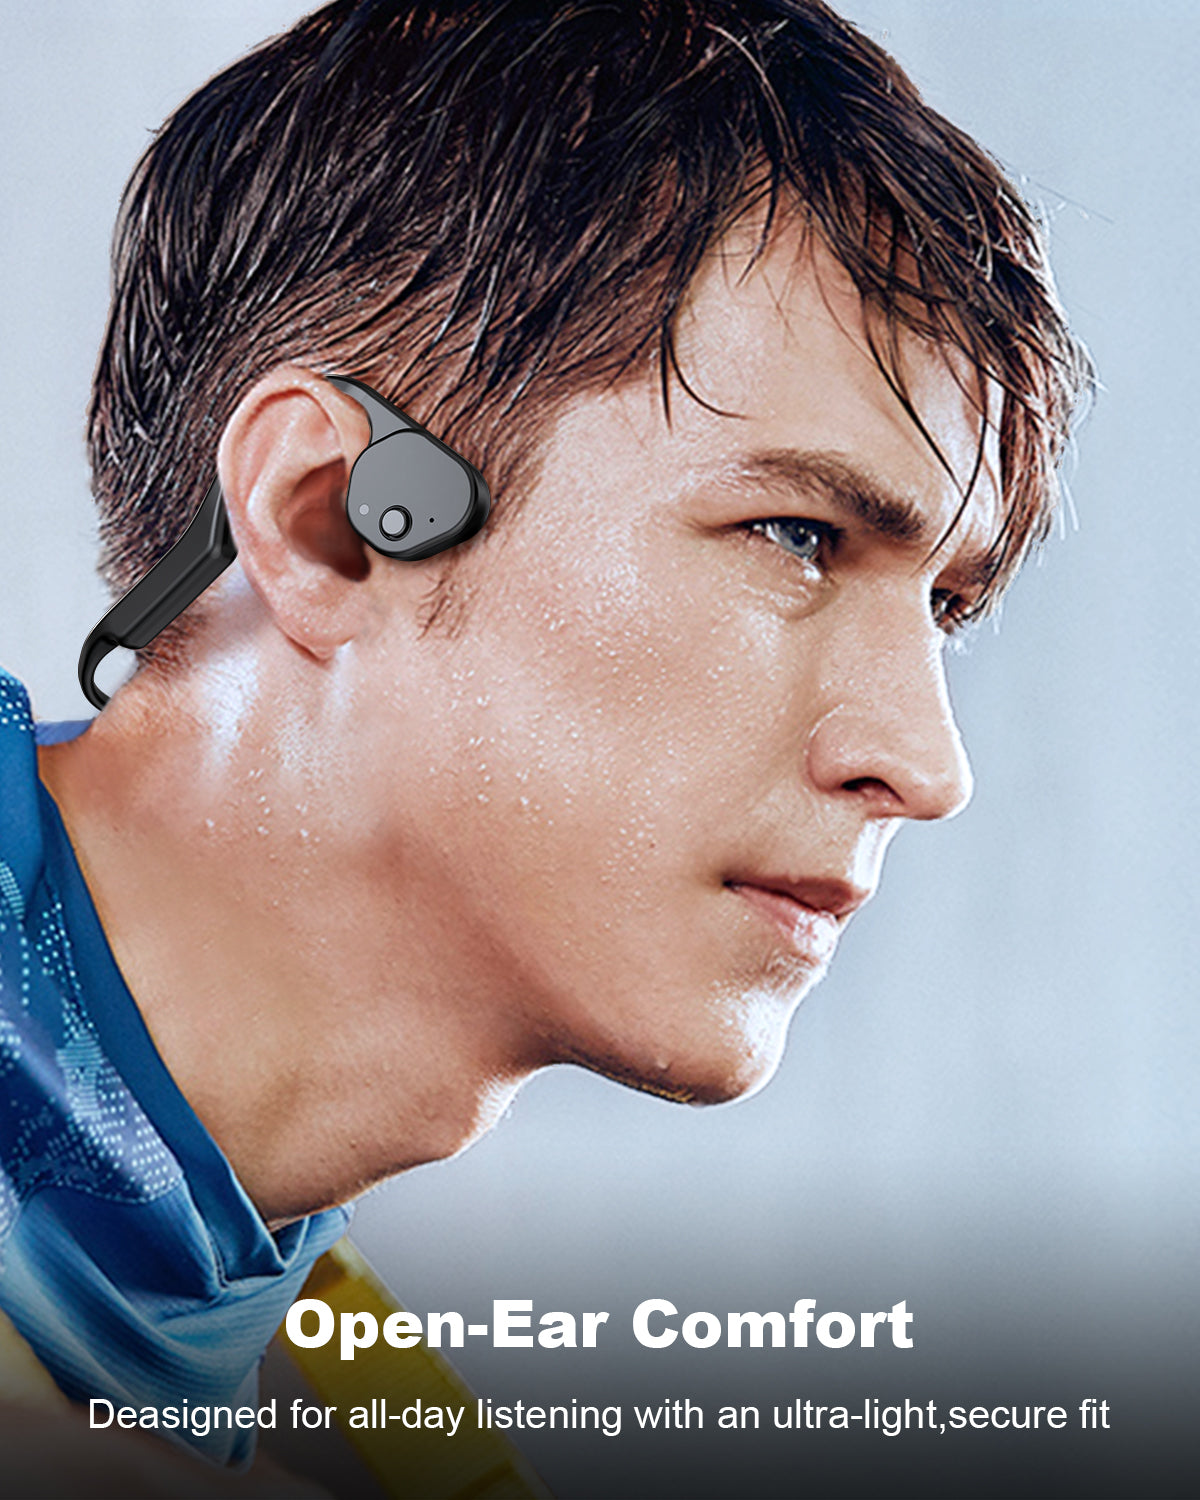 Open-Ear comfot headphones